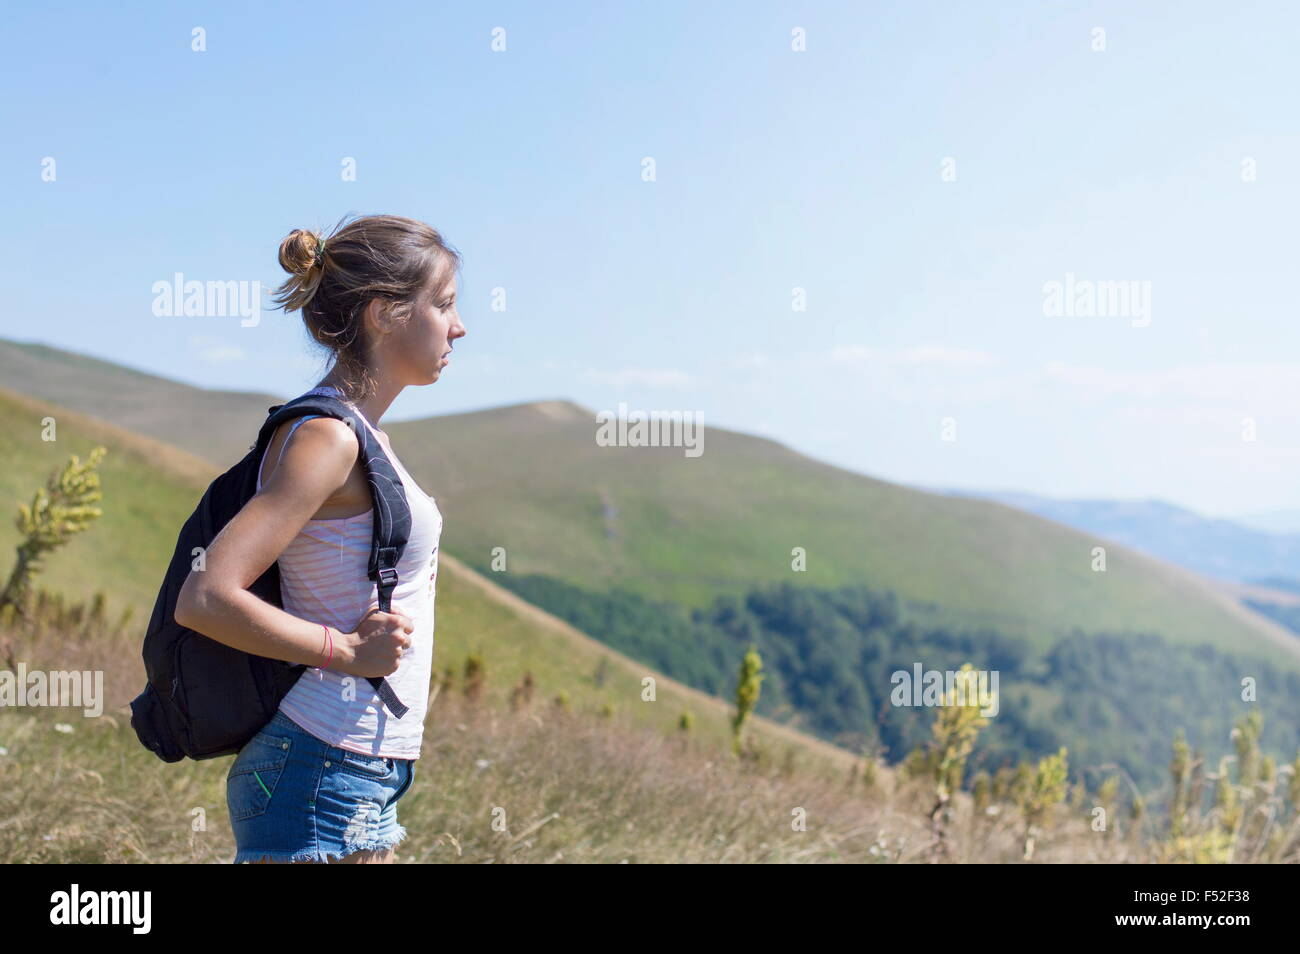 Junge, attraktive Mädchen mit einem Rucksack auf dem Rücken, auf dem Berg stehen. Grüne Wiesen und majestätische Berge in den backgr Stockfoto